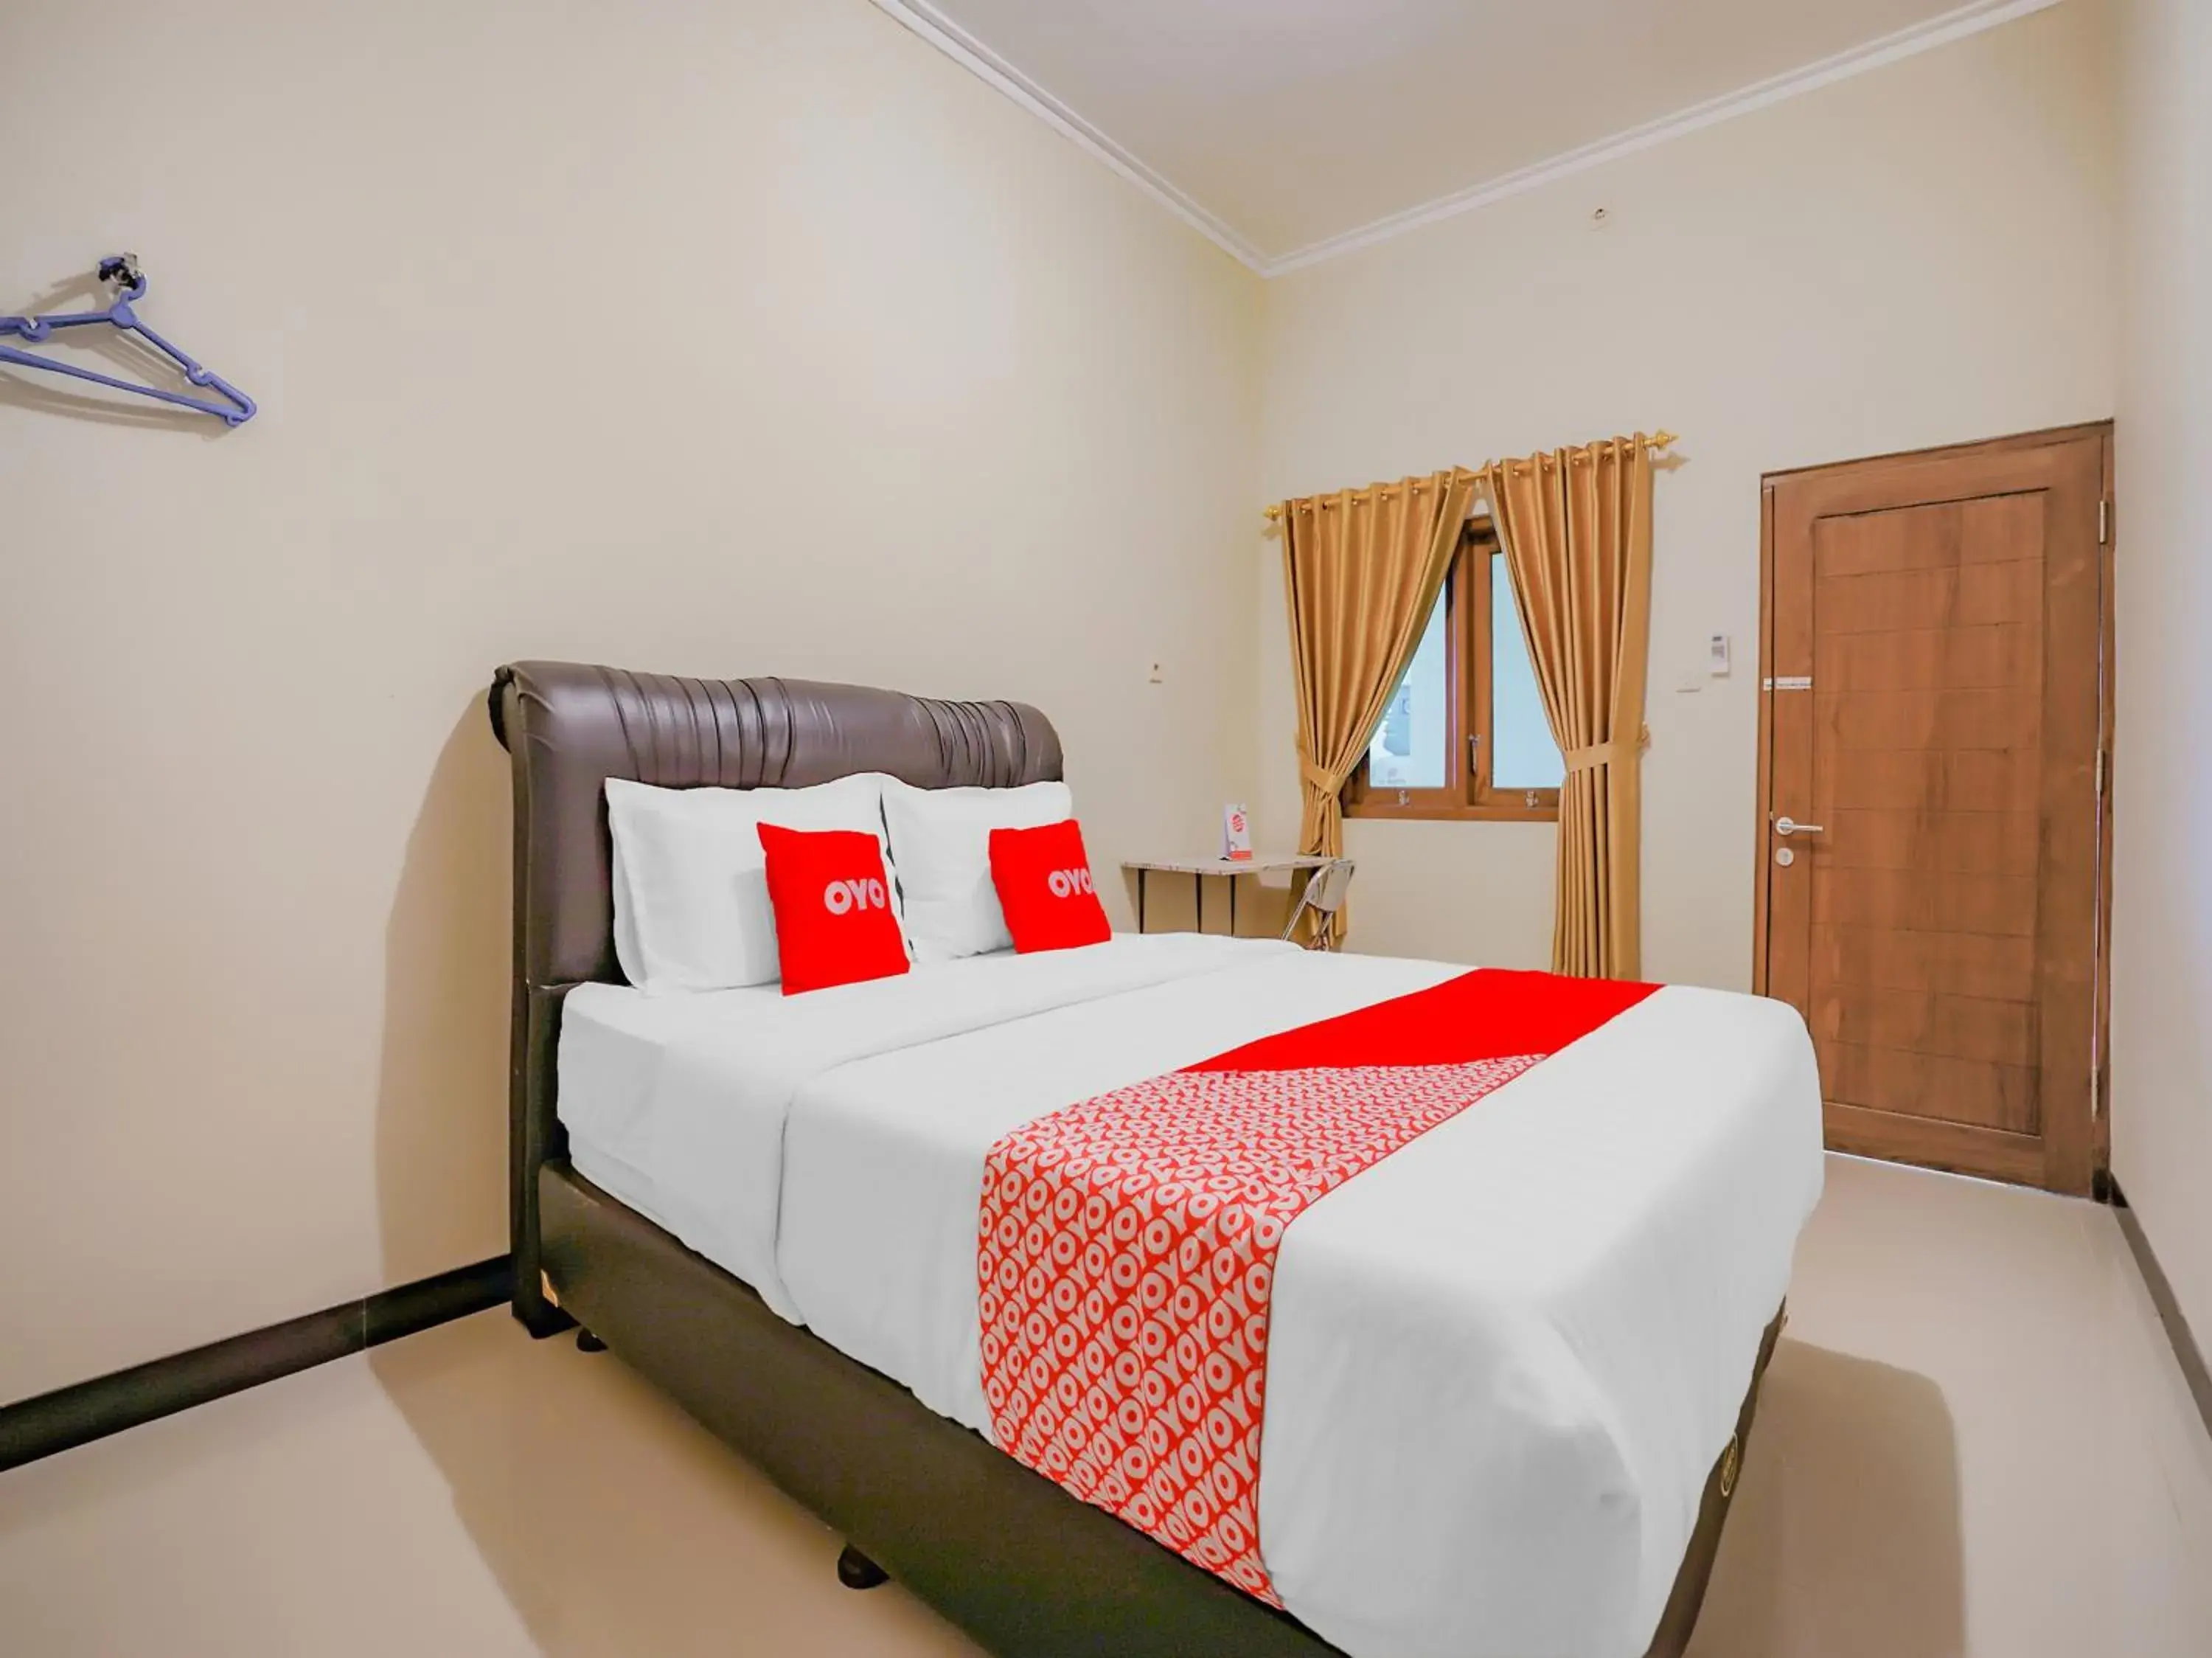 Bedroom, Bed in OYO 90210 Kenari House Syariah